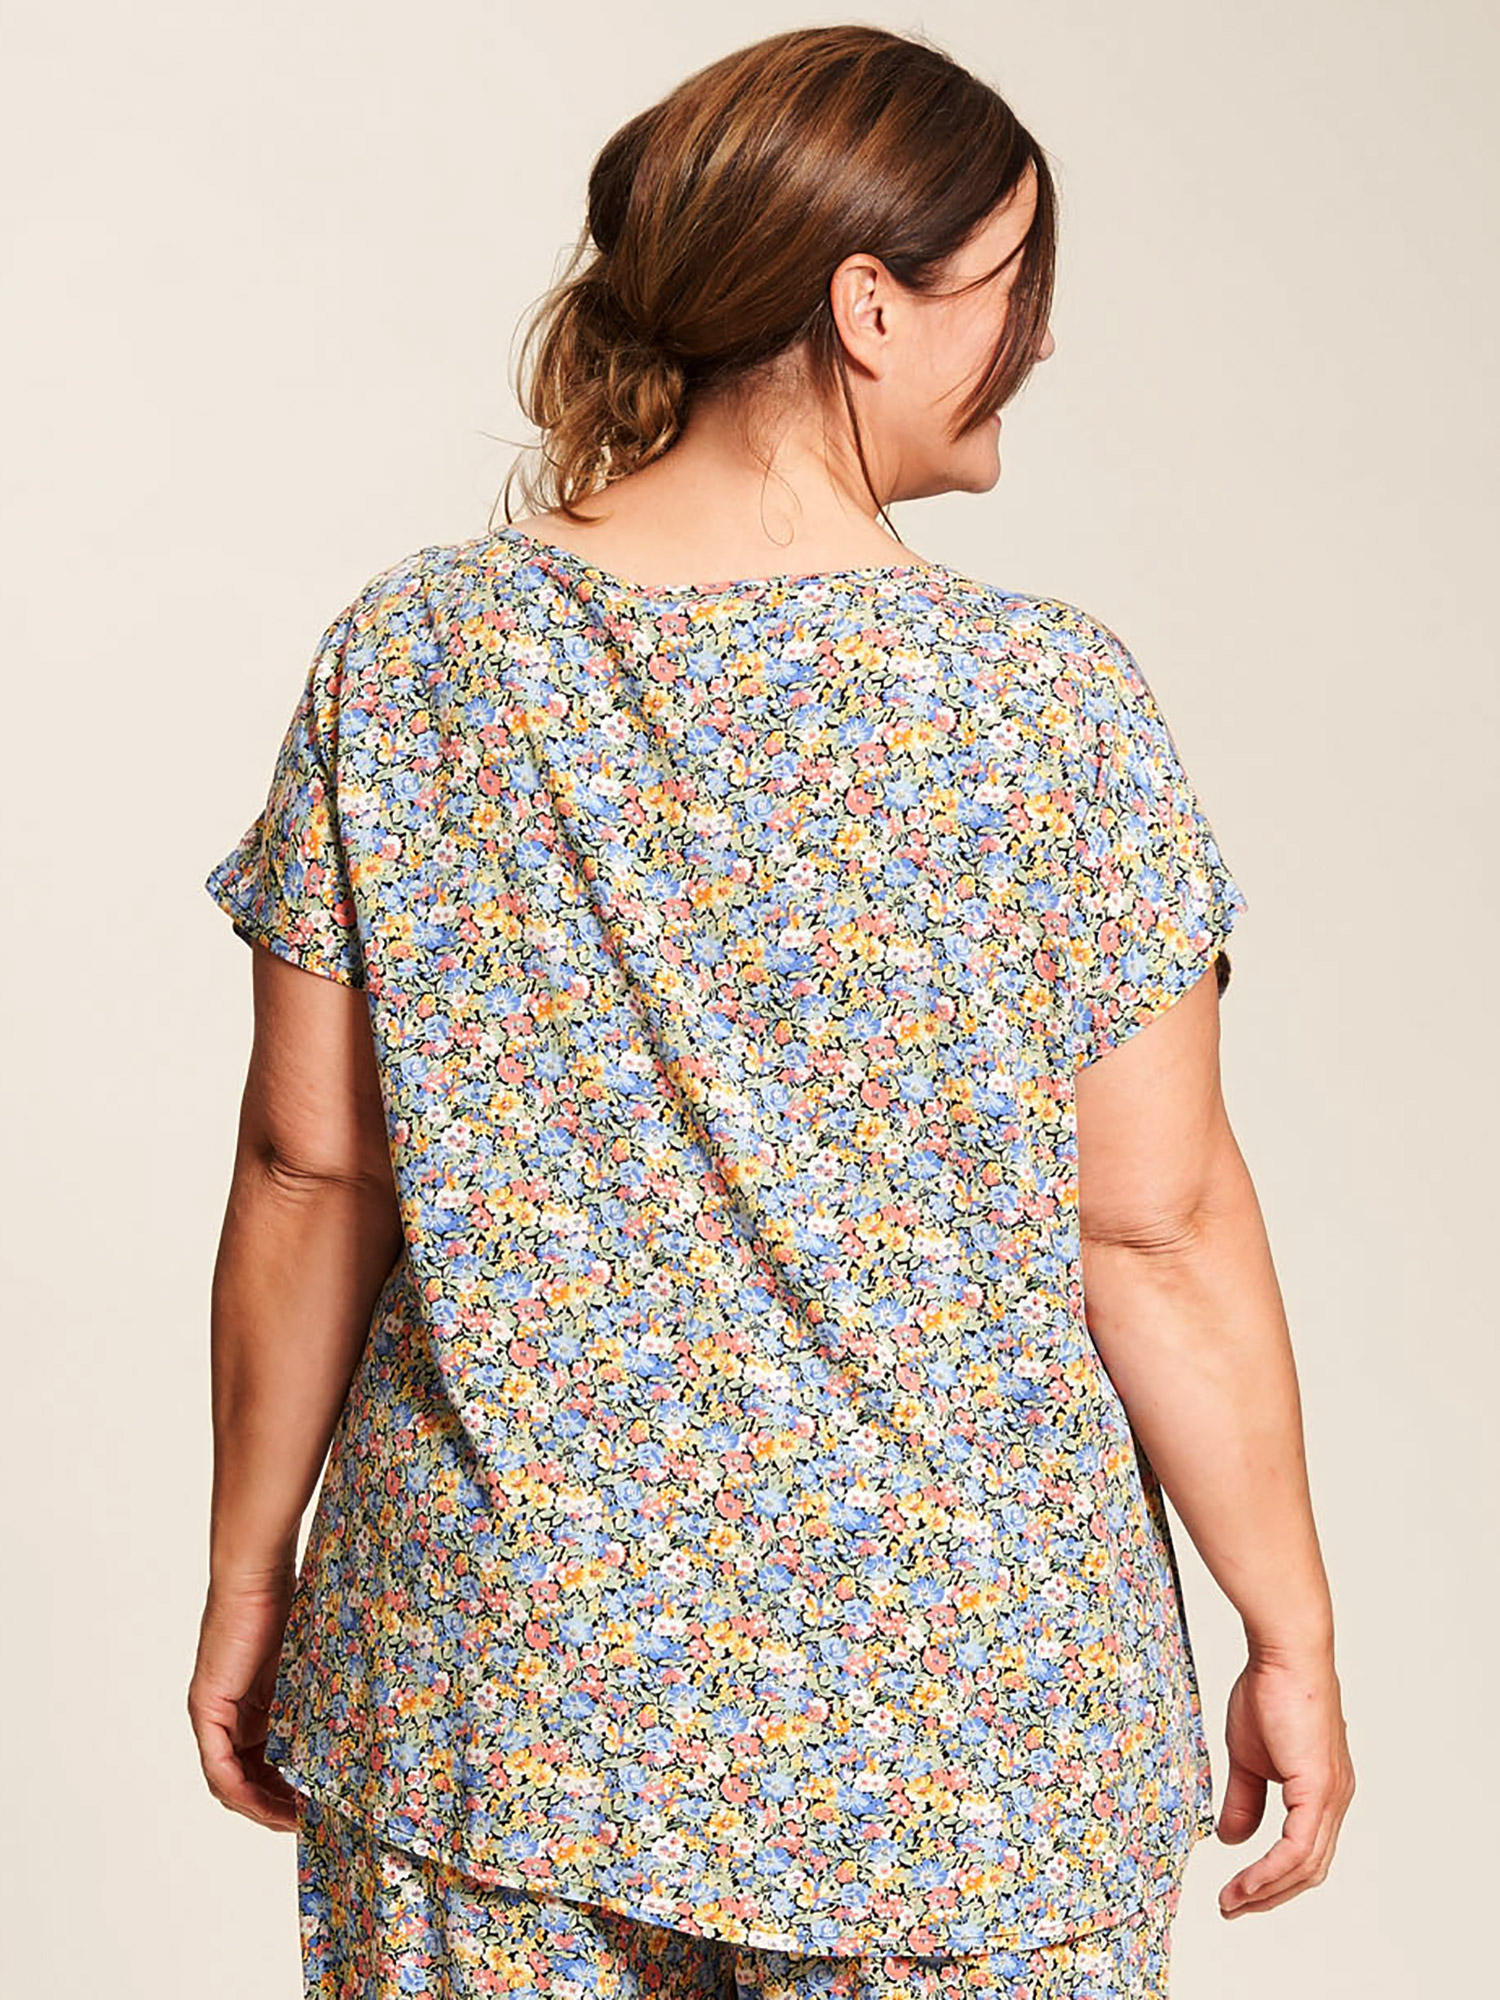 Dorthea - Viskose bluse med fint blomster print fra Gozzip